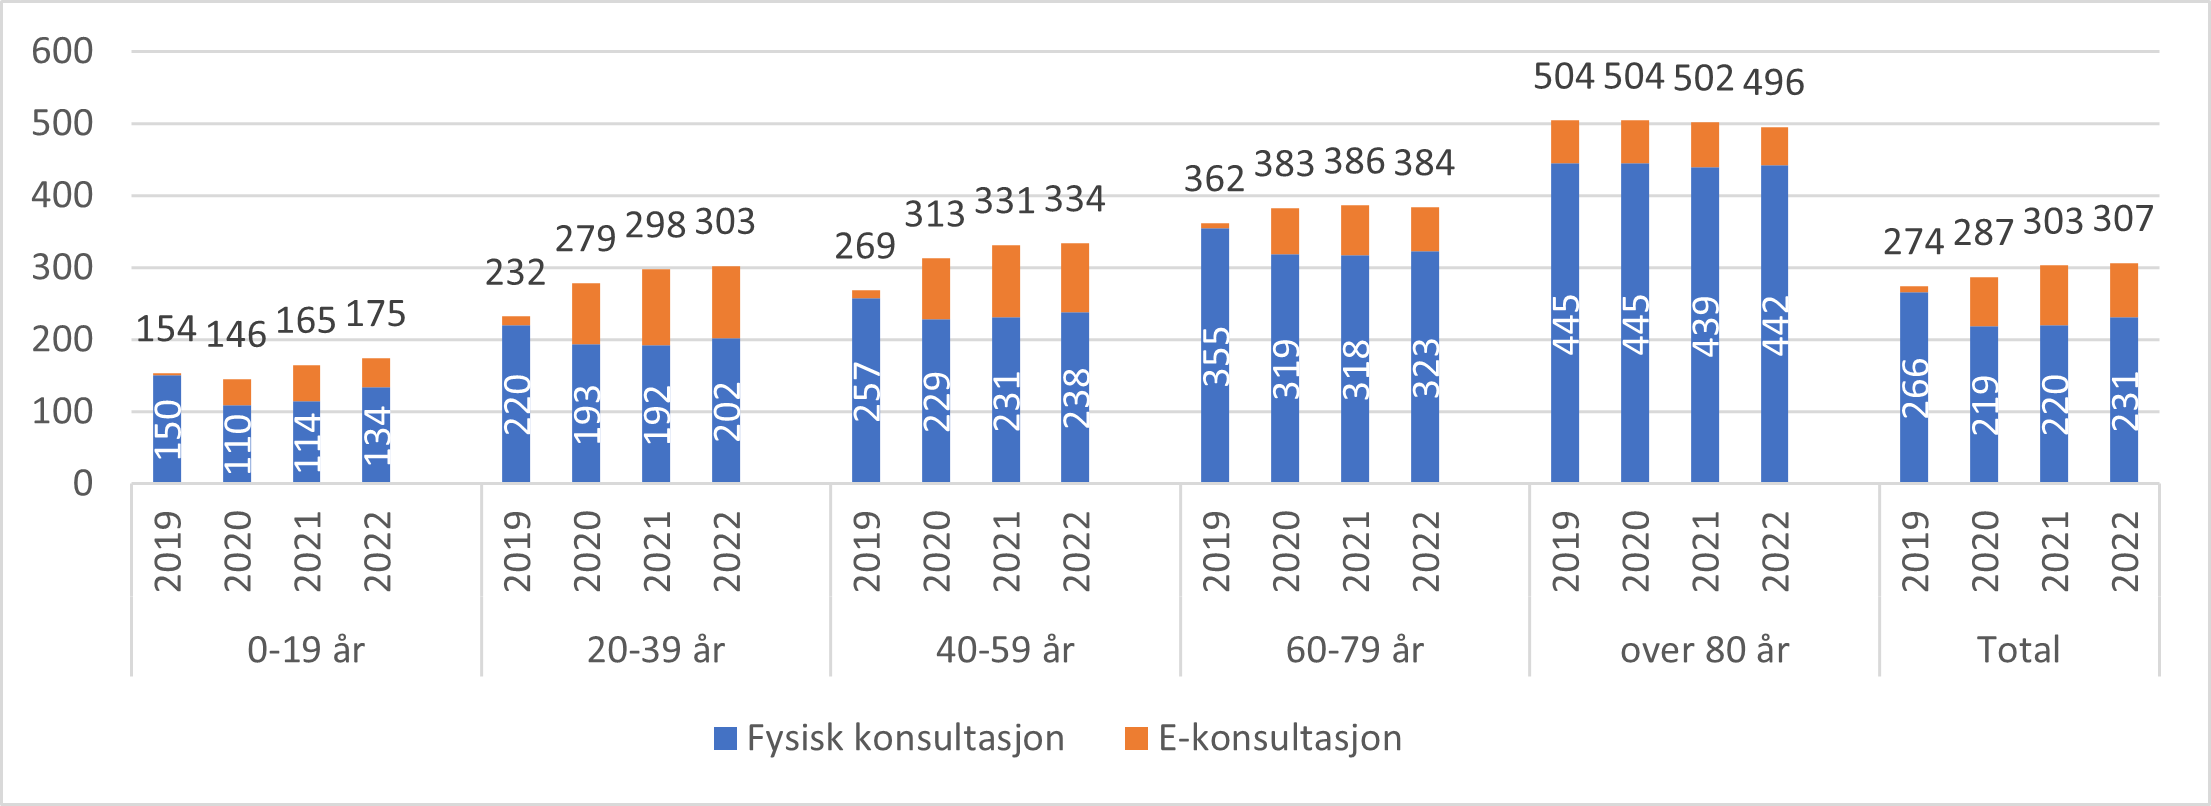 Antall fysiske konsultasjoner og e-konsultasjoner (inklusive telefonkonsultasjoner) hos fastlege per 100 innbygger for aldersgrupper og nasjonalt, 2019-2022*.